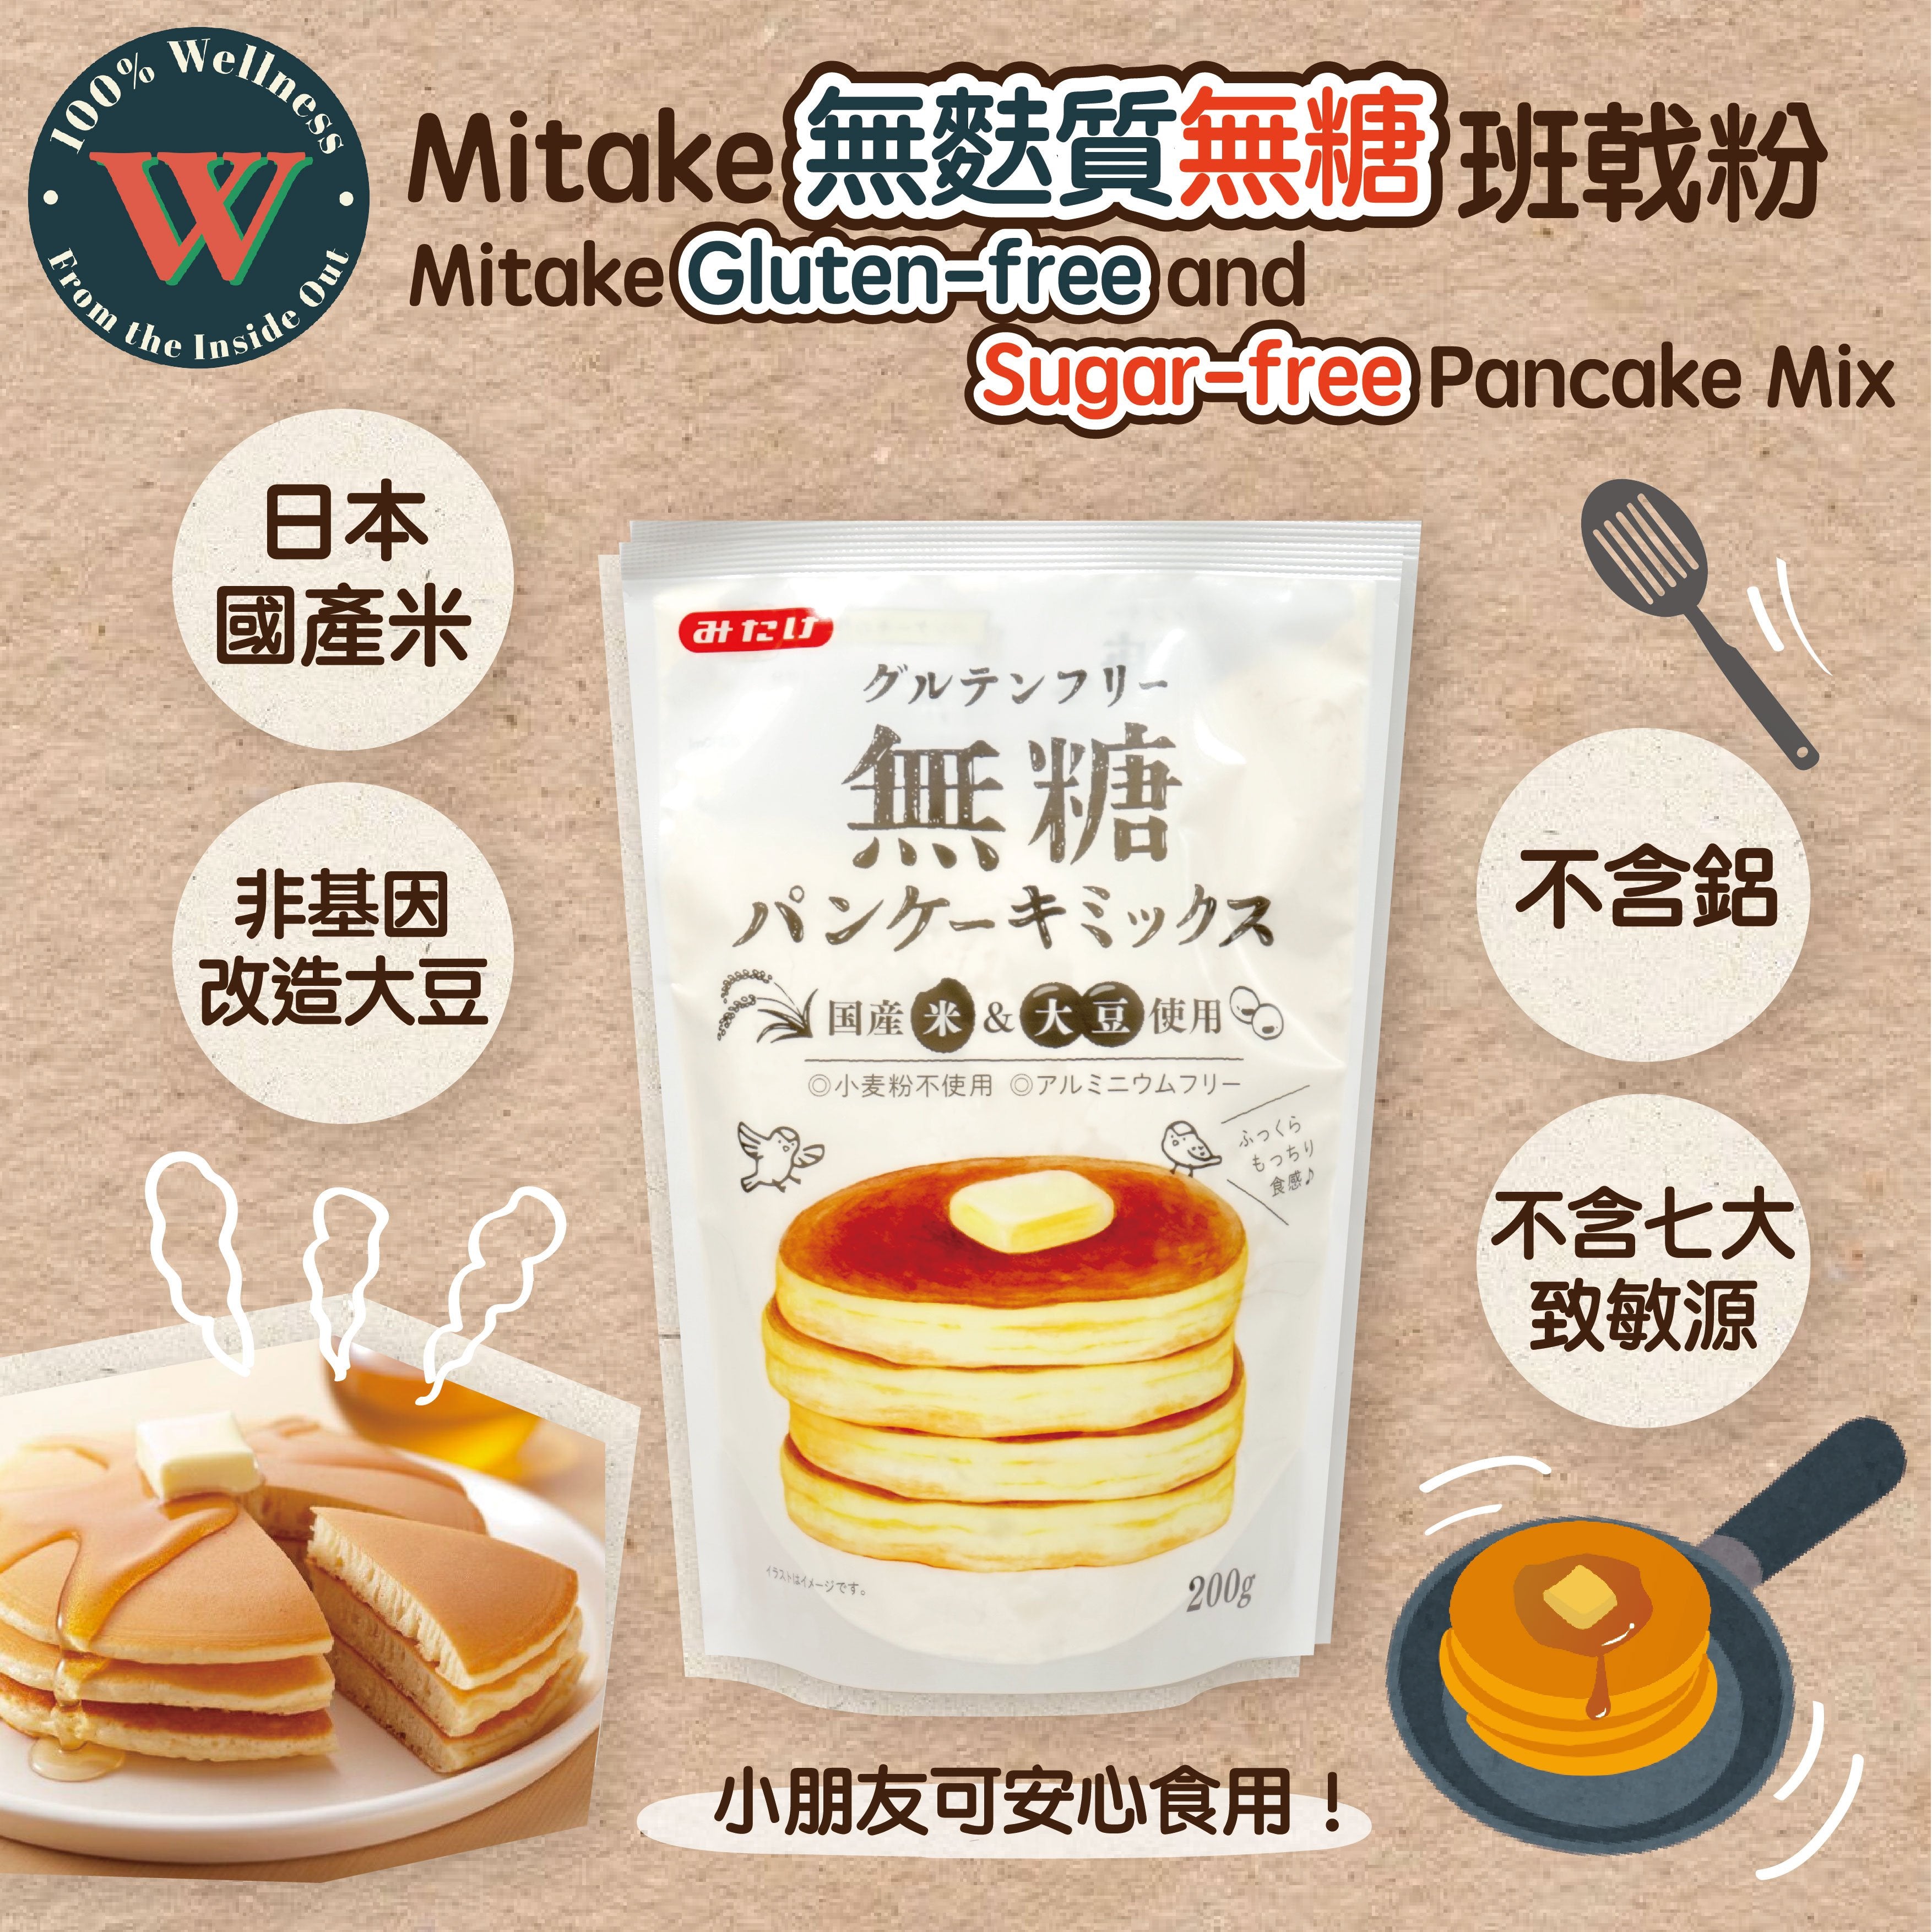 Mitake Gluten-free and Sugar-free Pancake Mix [200g]